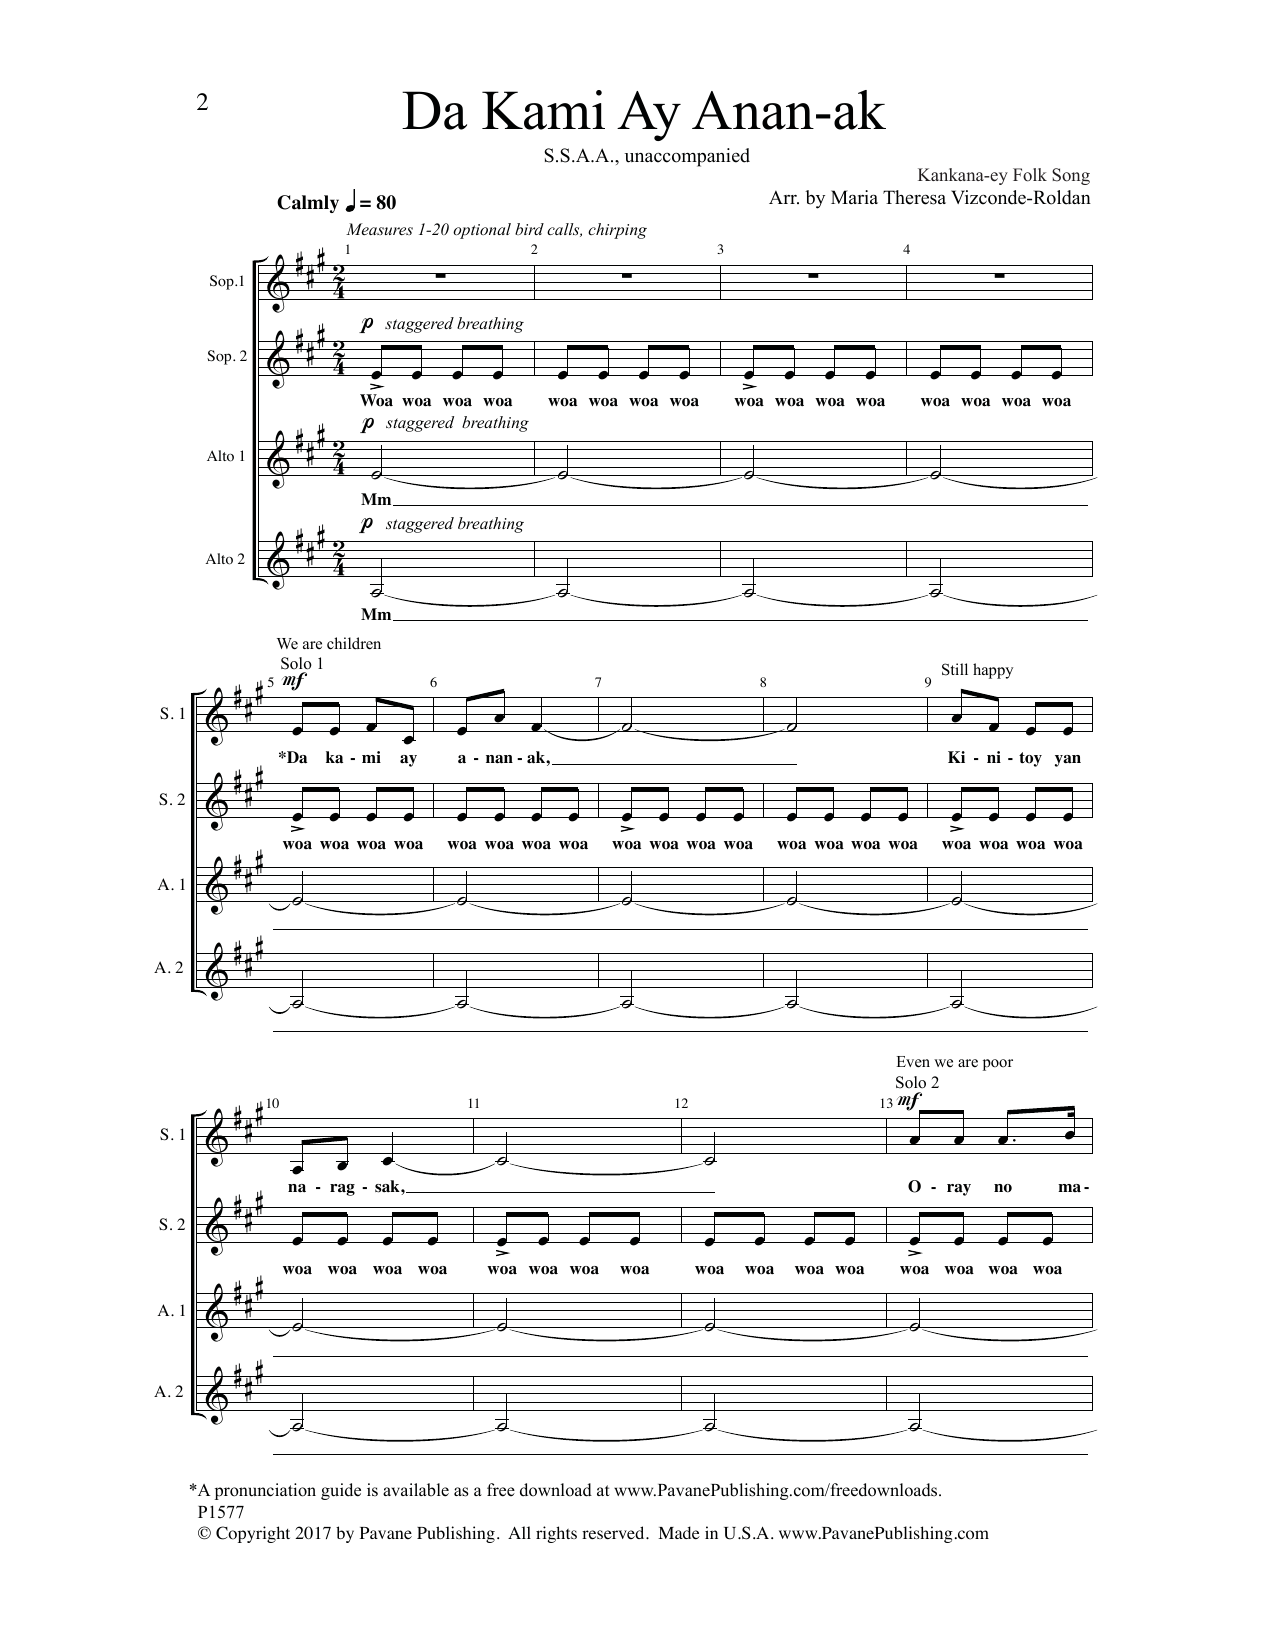 Maria Theresa Vizconde-Roldan Da Kami Ay Anan-Ak Sheet Music Notes & Chords for Choral - Download or Print PDF